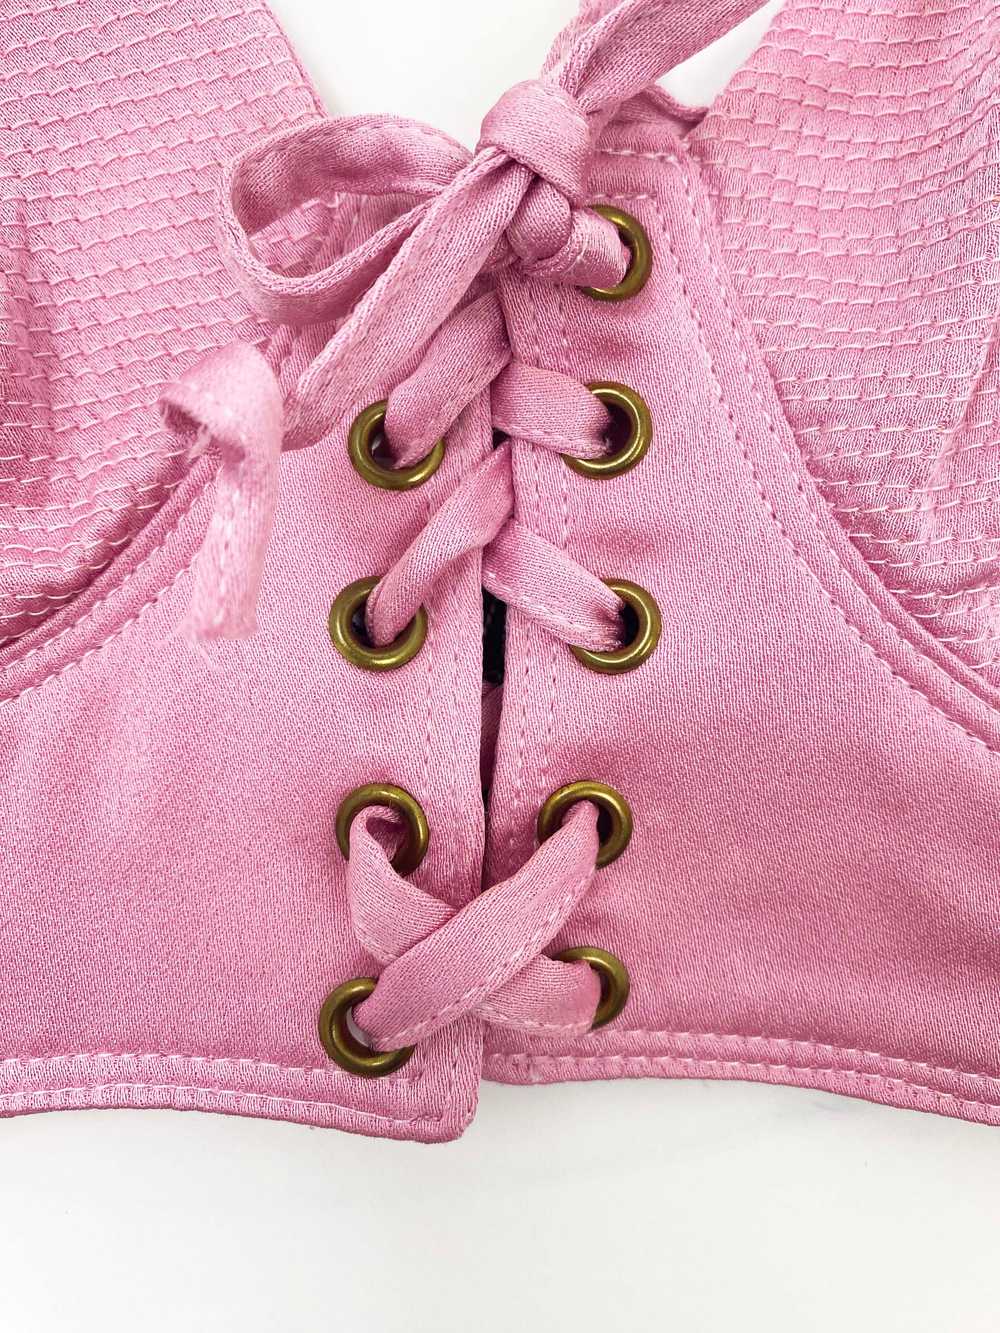 Versus Gianni Versace 90s pink bustier - image 5